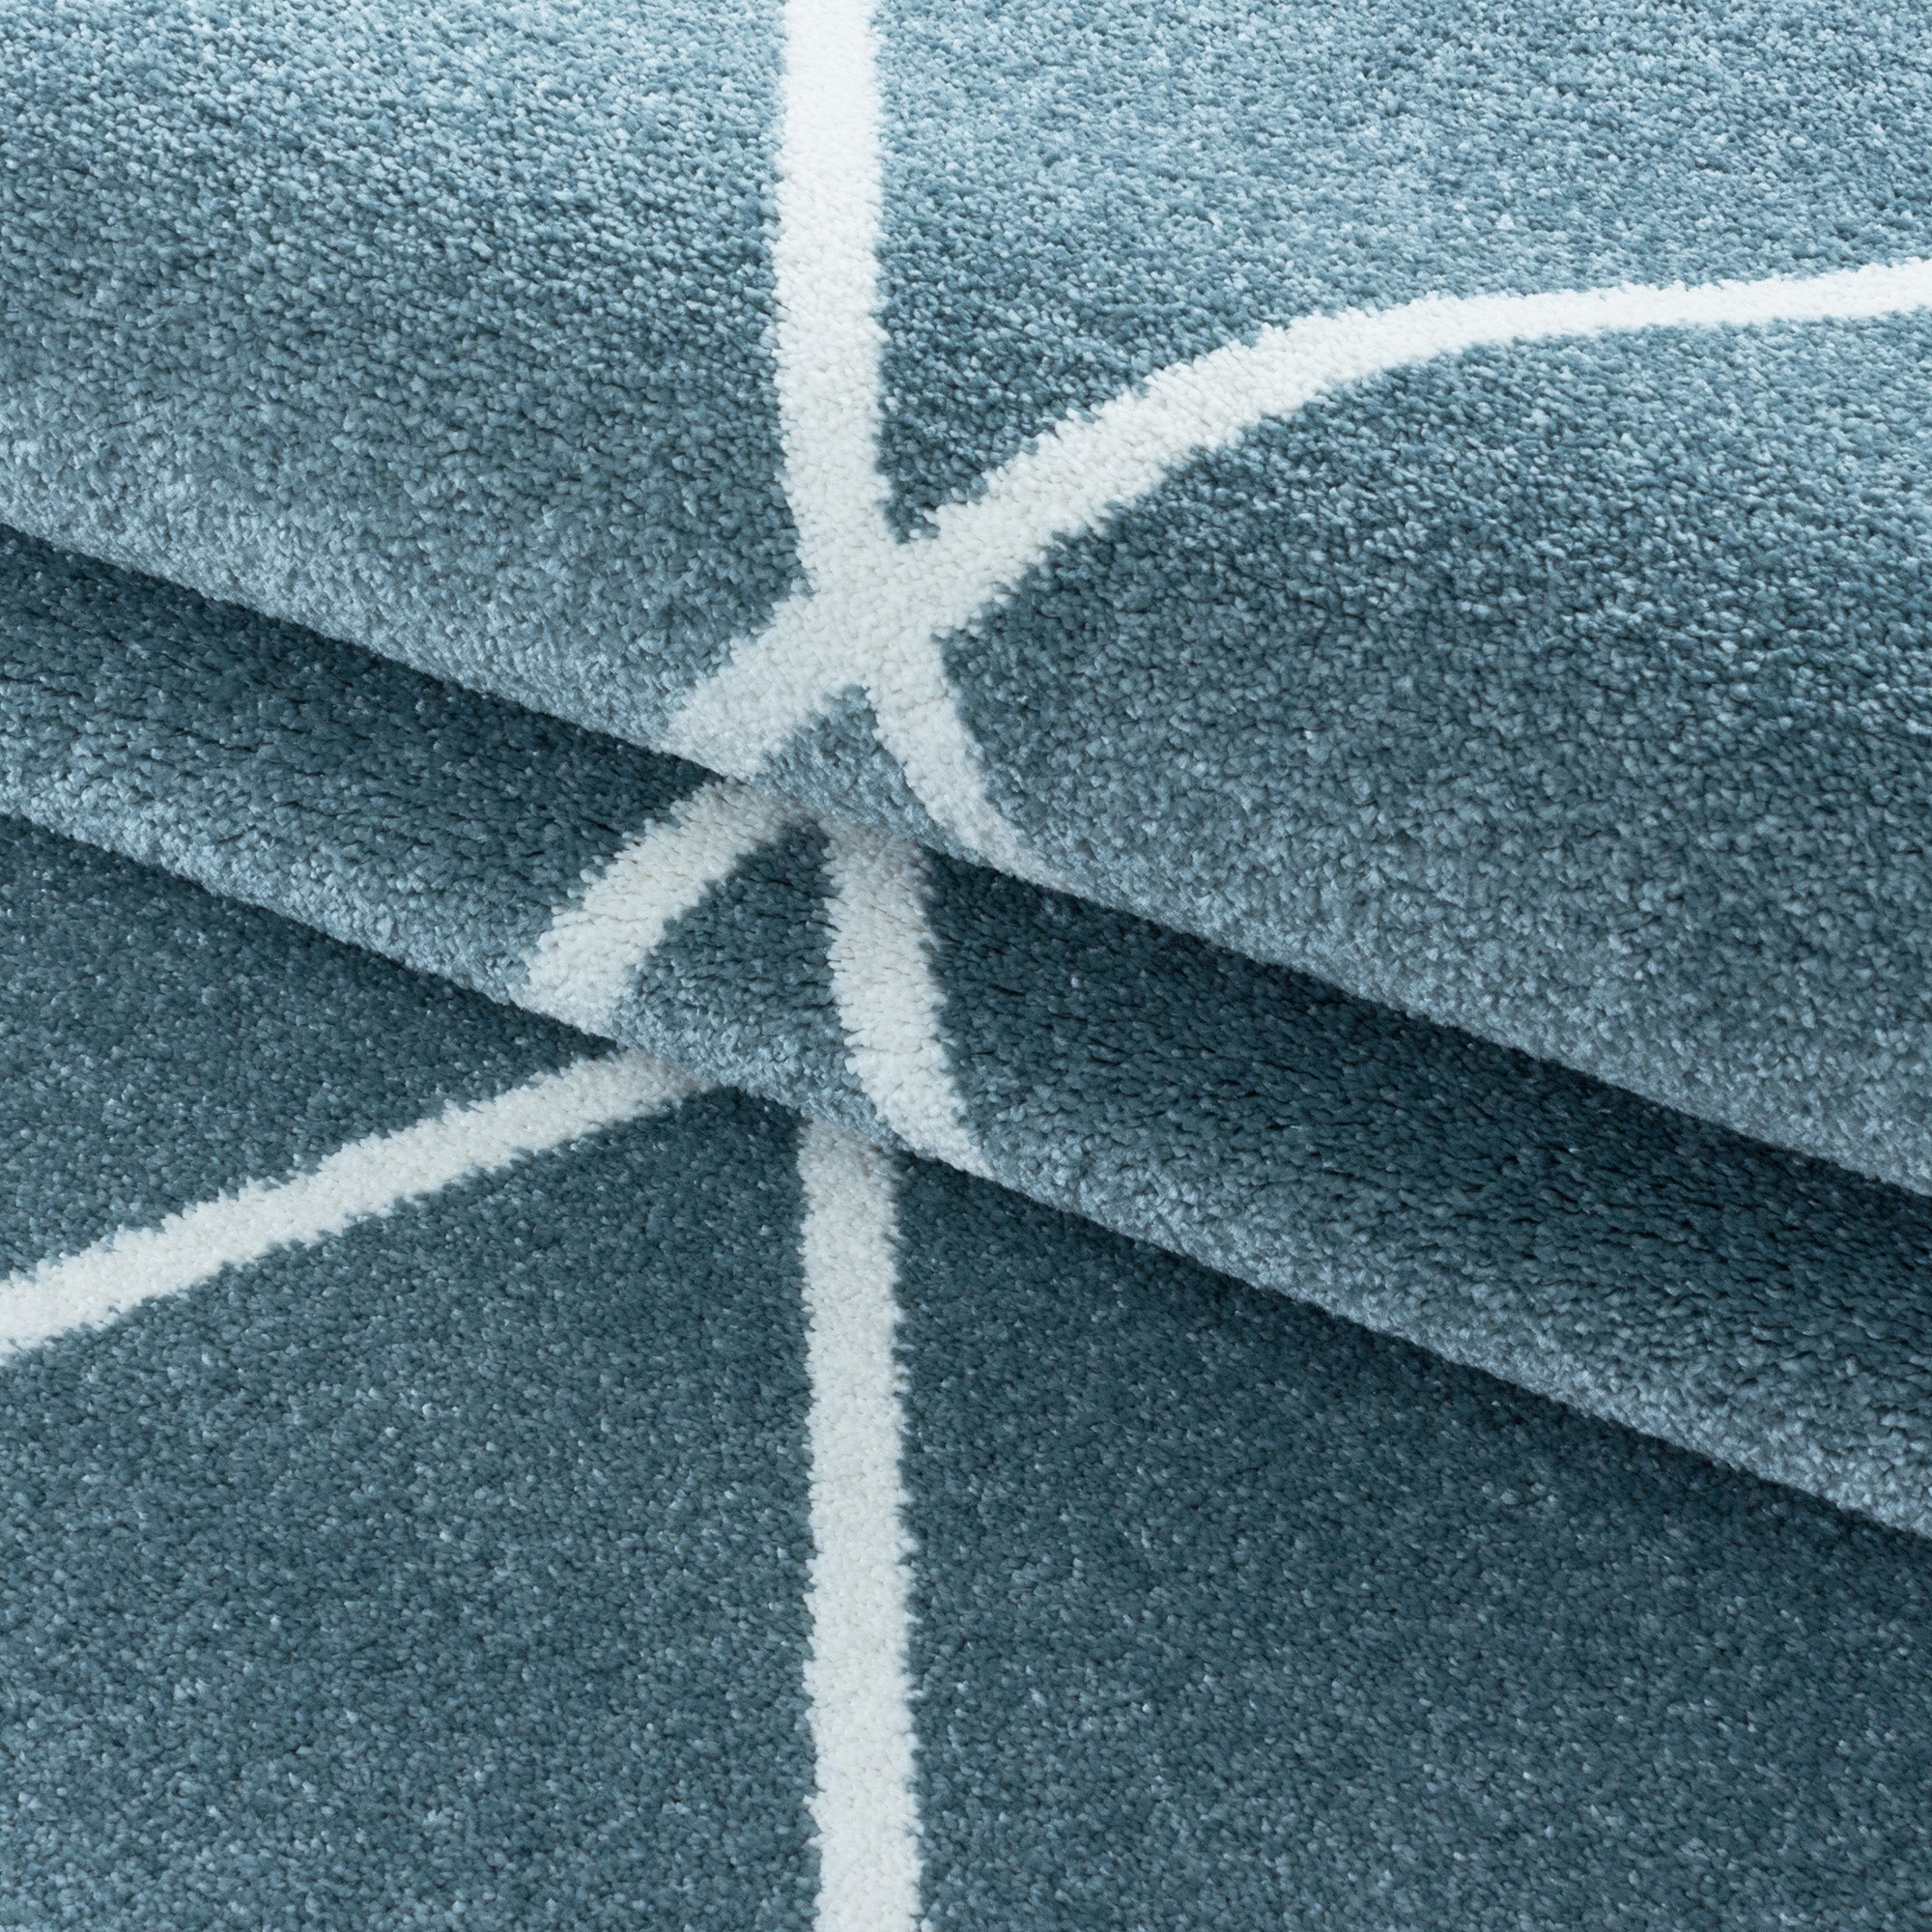 Kurzflor Teppich Blau Design Raute Modern Linien Wohnzimmerteppich Unifarben